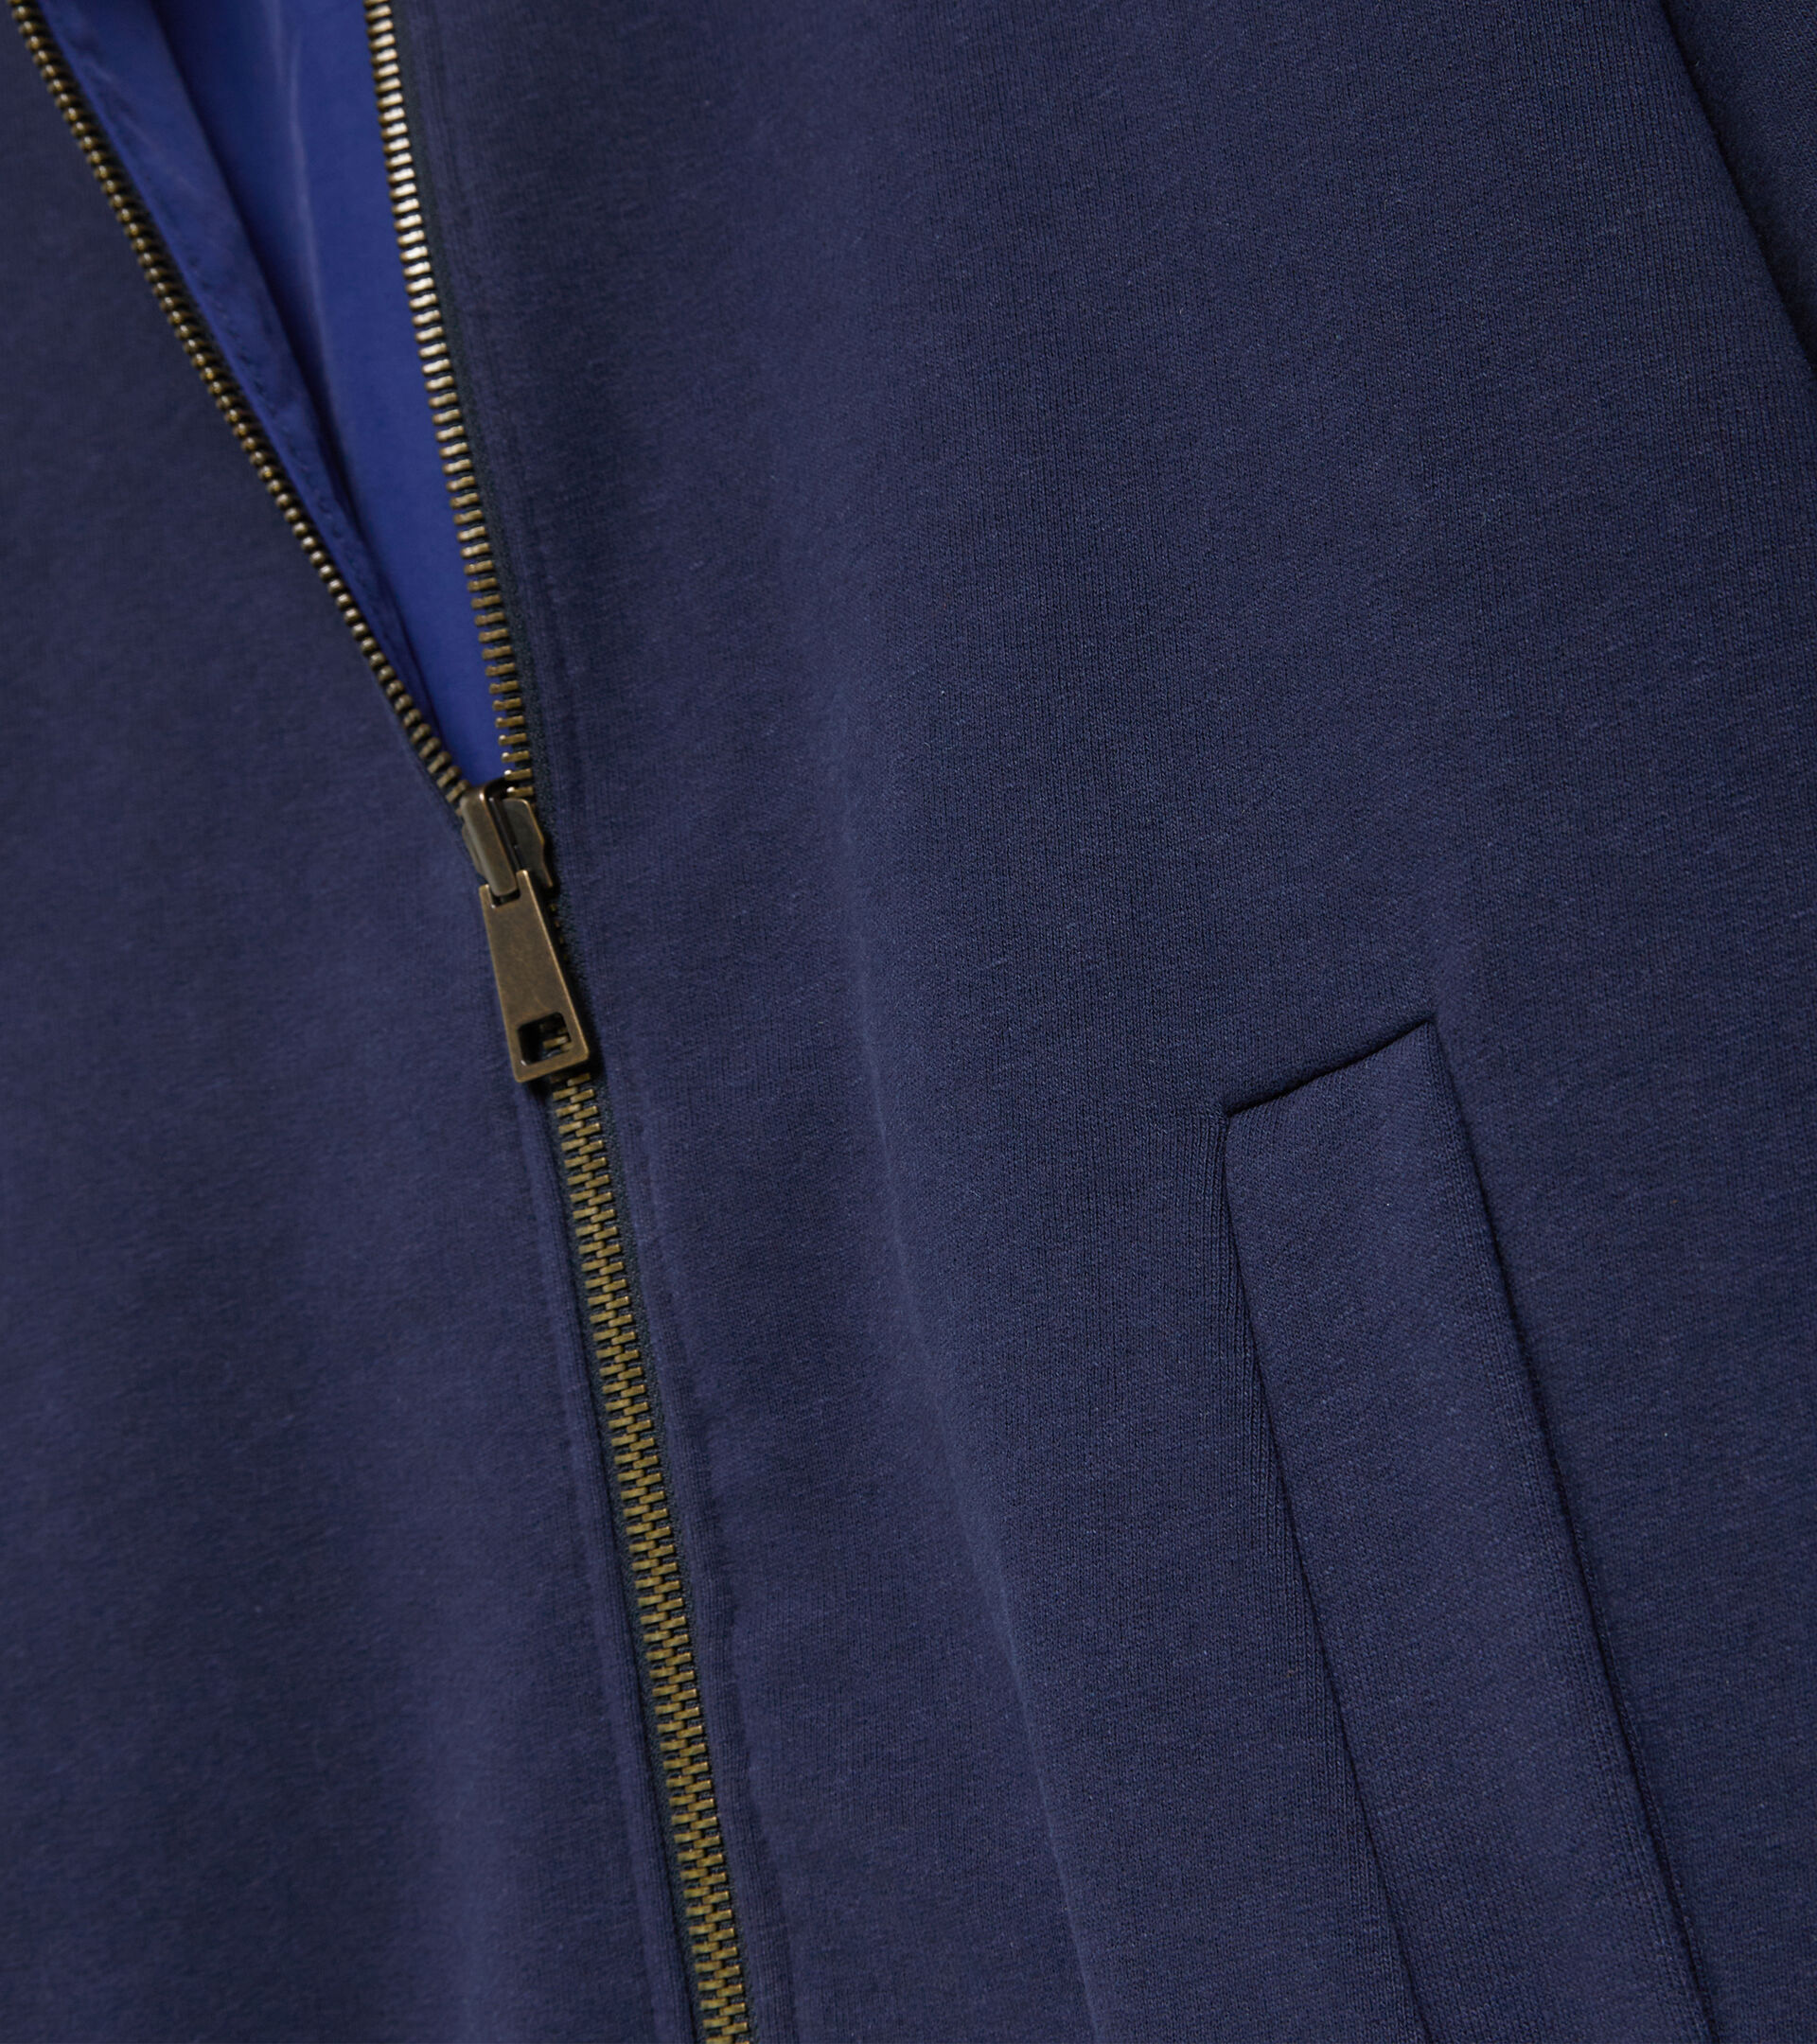 2030 full-zip hoodie Made in Italy - Women L. FZ HOODIE REVERSIBLE 2030 BLUE CORSAIR - Diadora